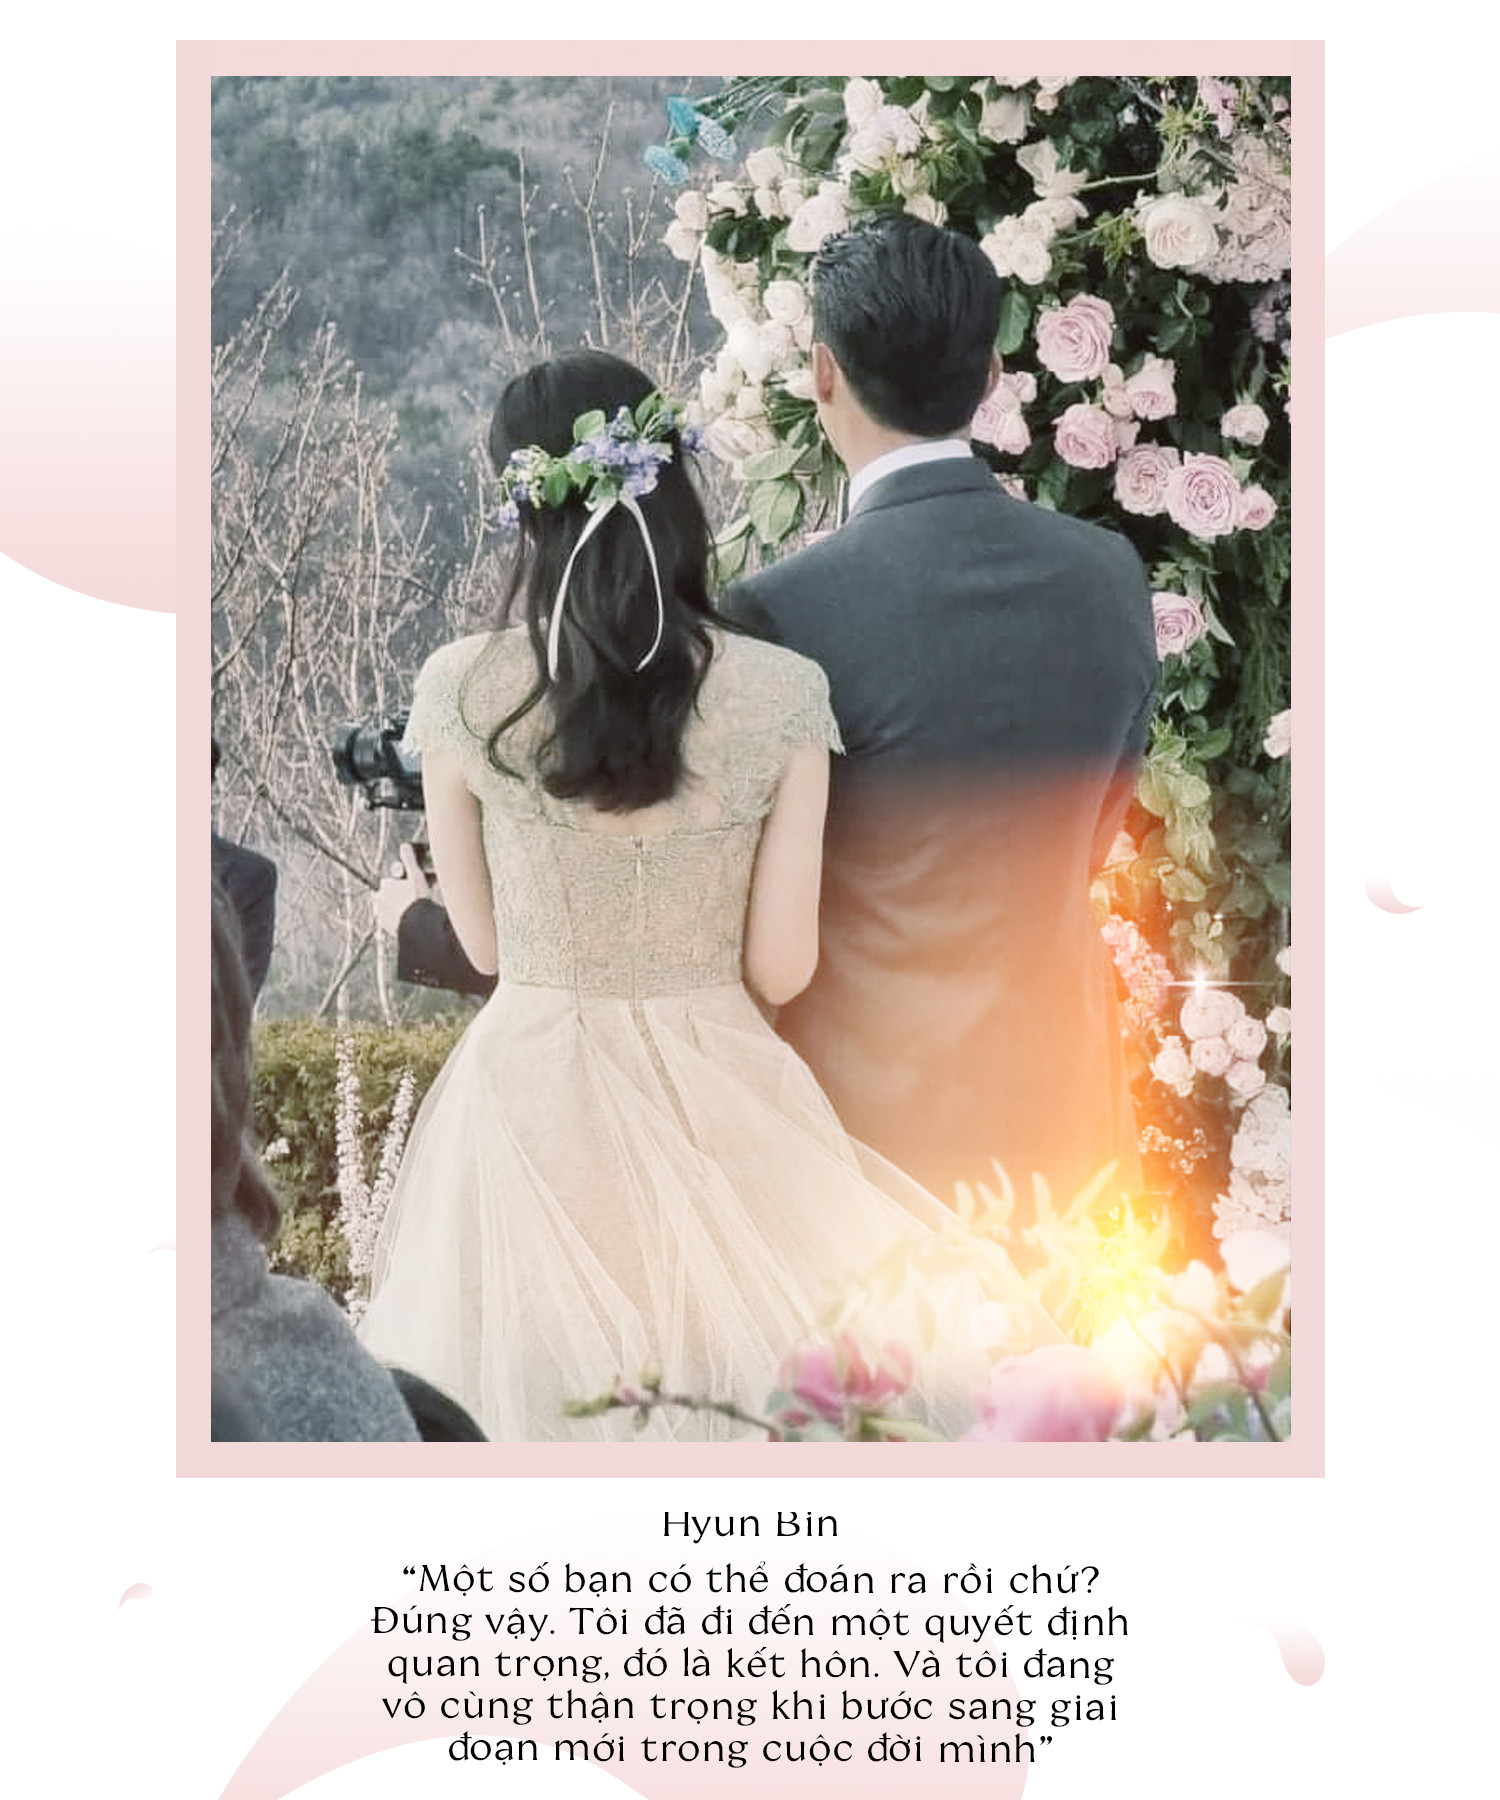 Hyun Bin – Son Ye Jin: Tình yêu rồi sẽ đến, chỉ muộn chút thôi, hãy chờ nhé!